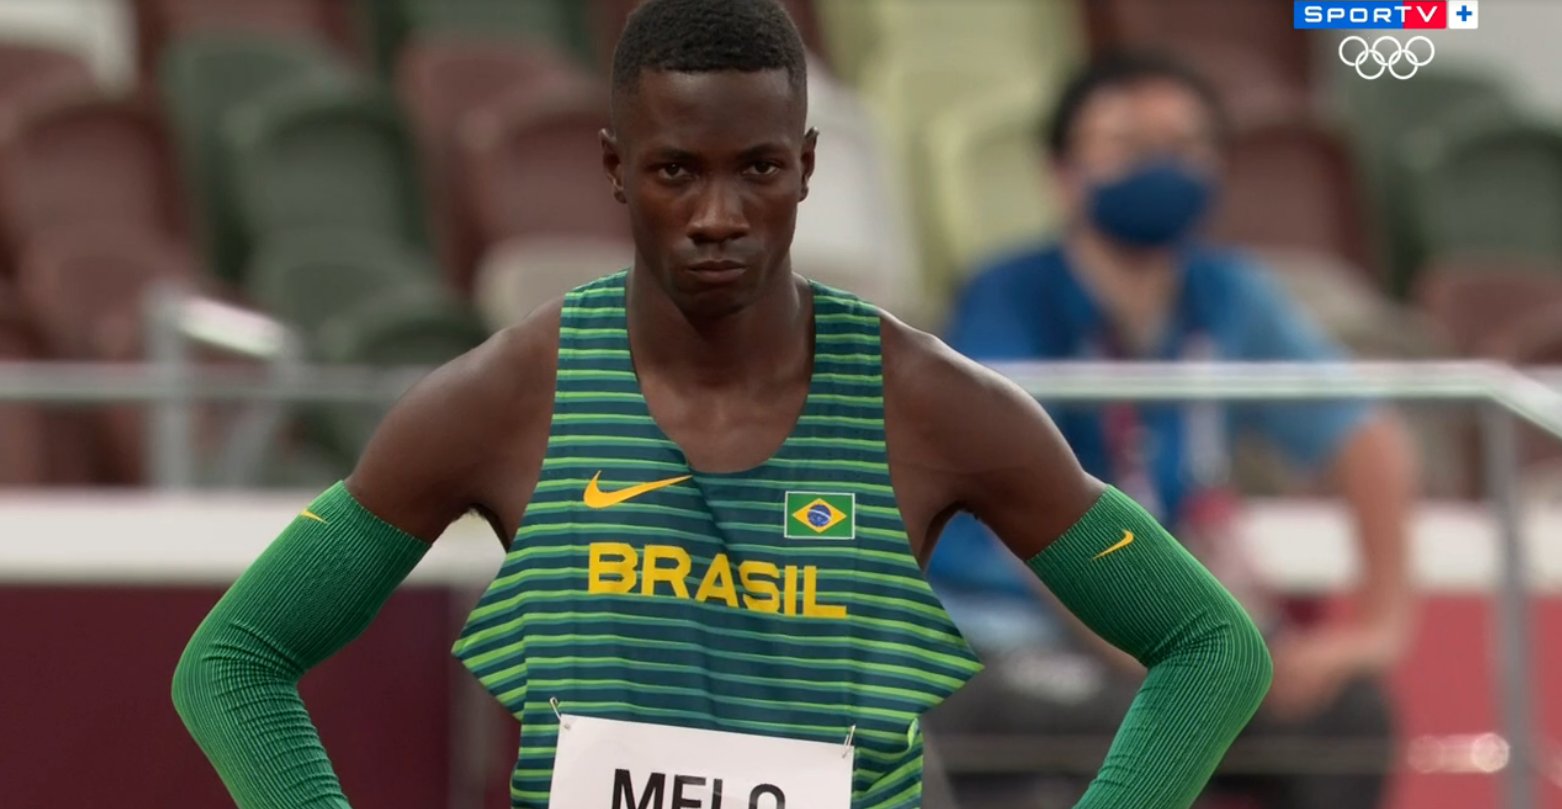 Brasileiros não se classificam para final do atletismo salto em distância